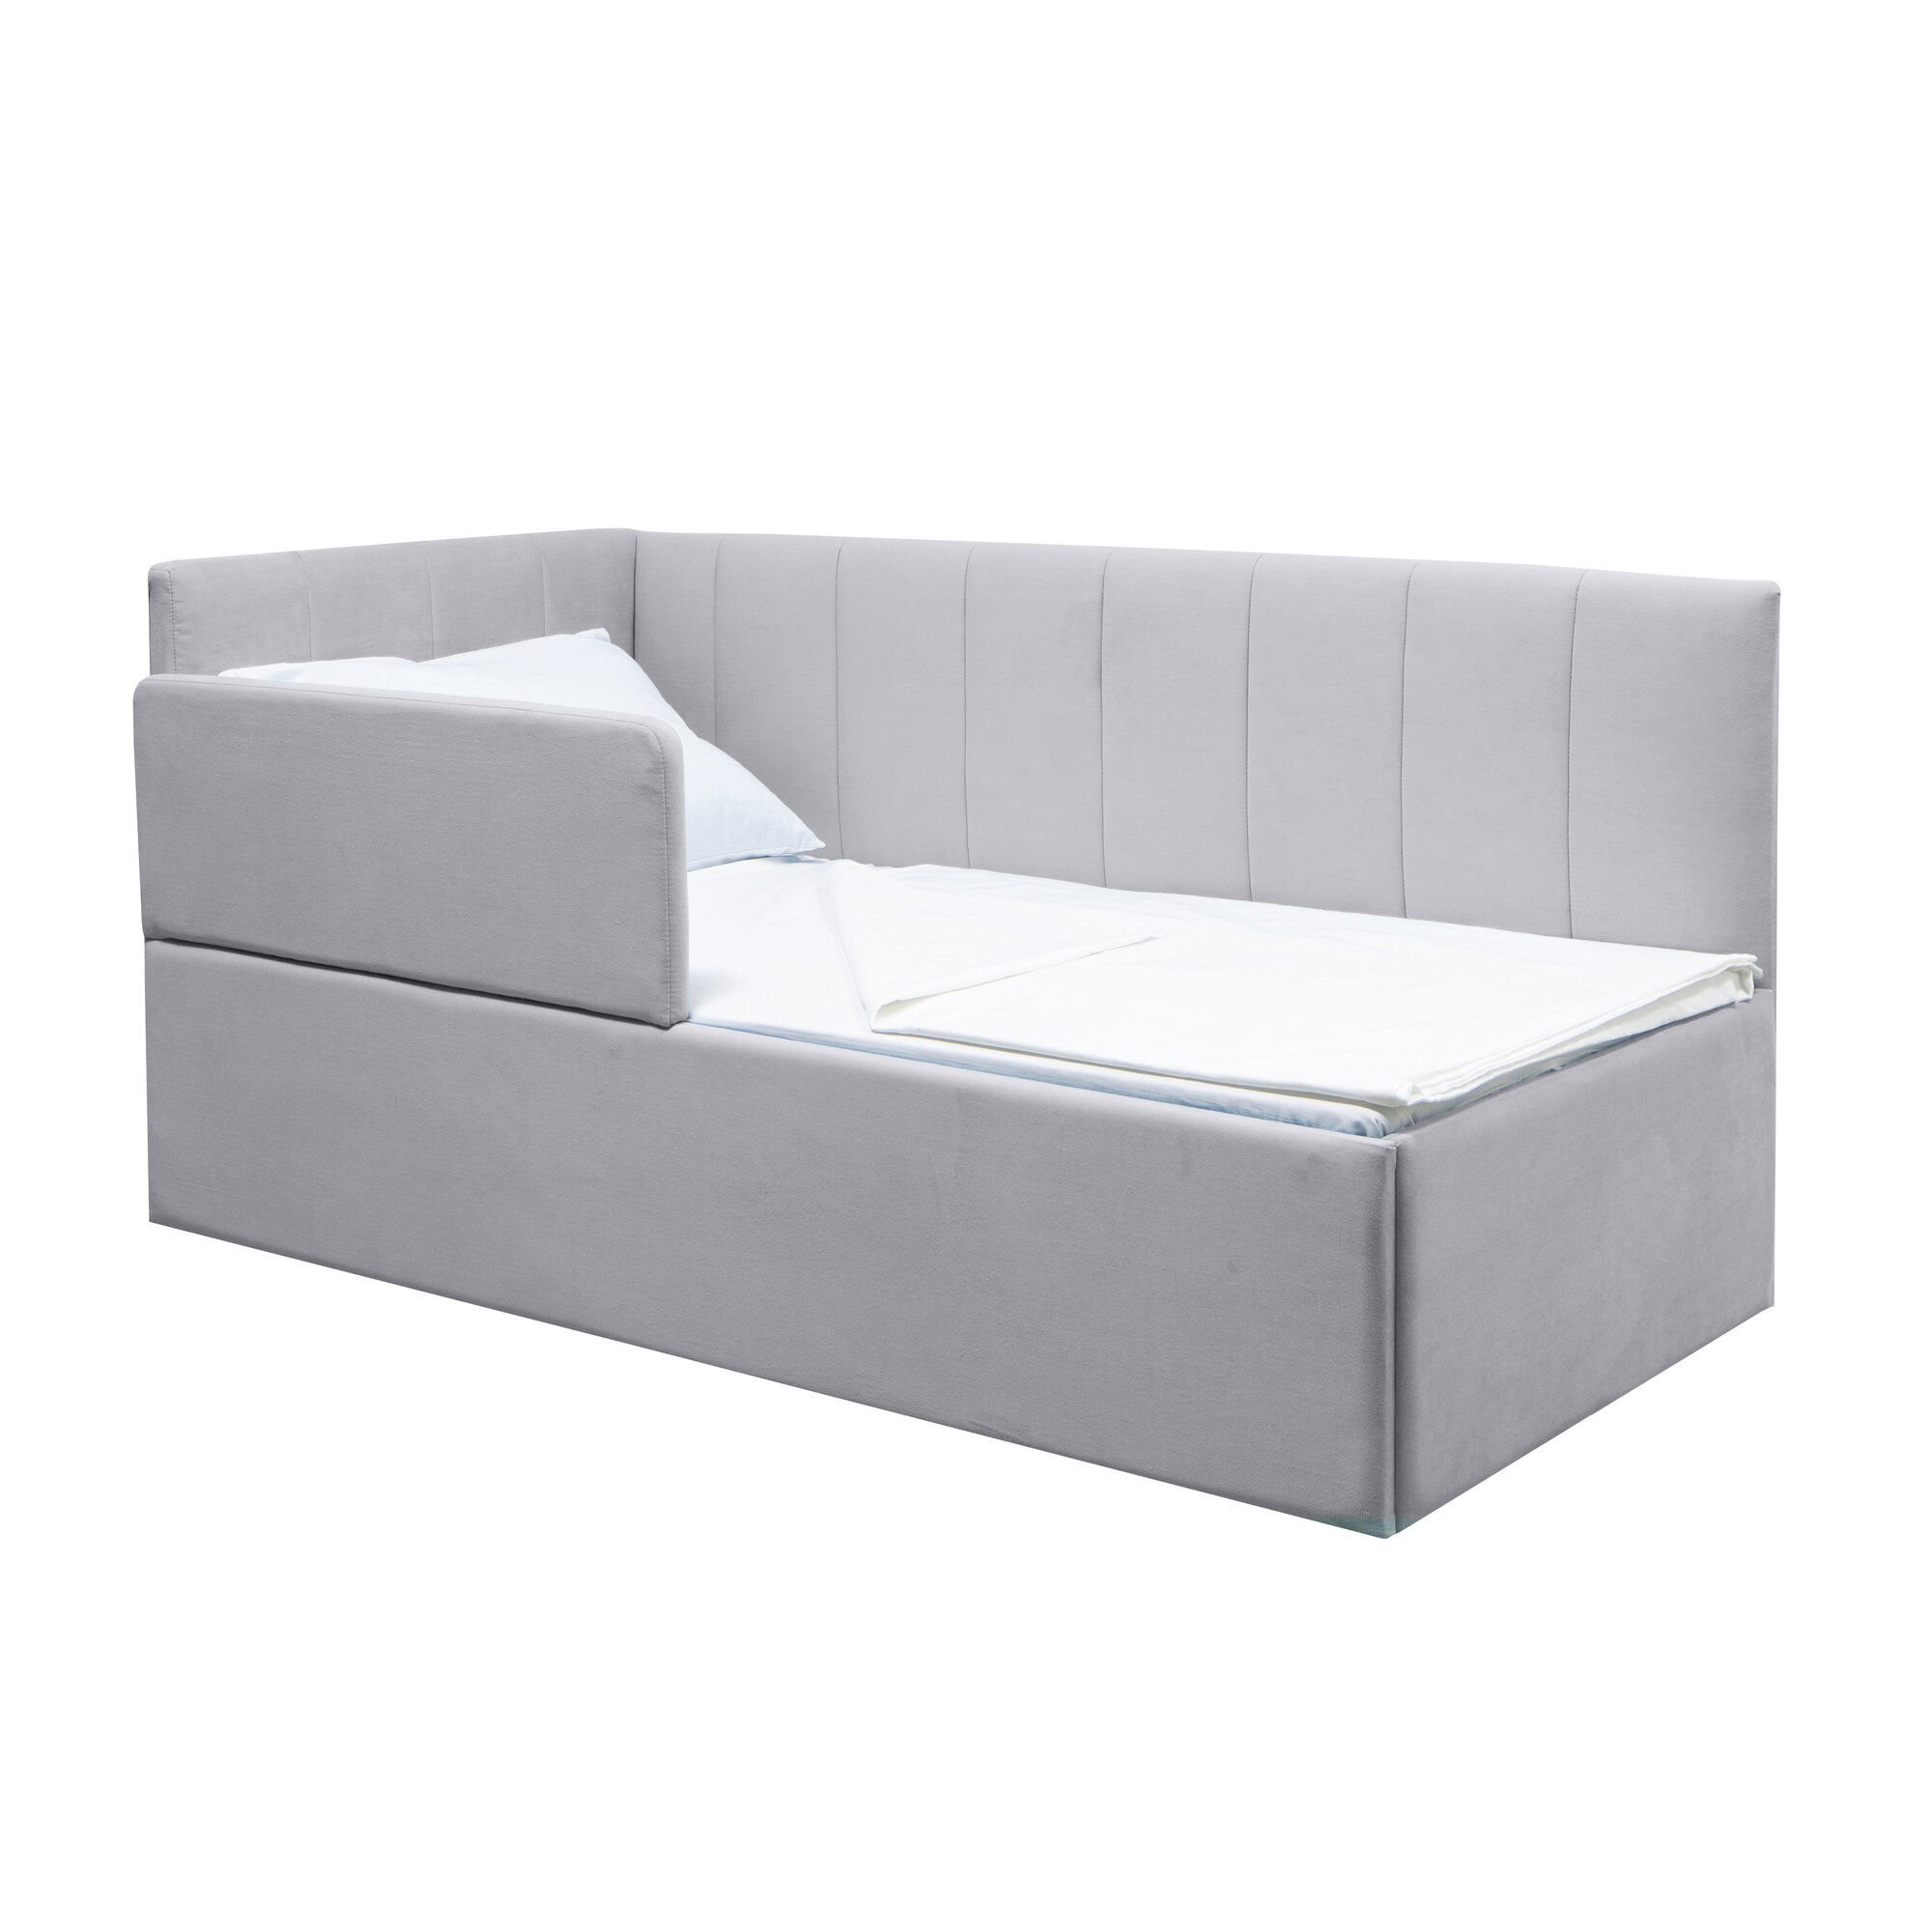 Кровать Хагги 160*80 серая, универсальный угол сборки, с защитным бортиком, без ящика для хранения